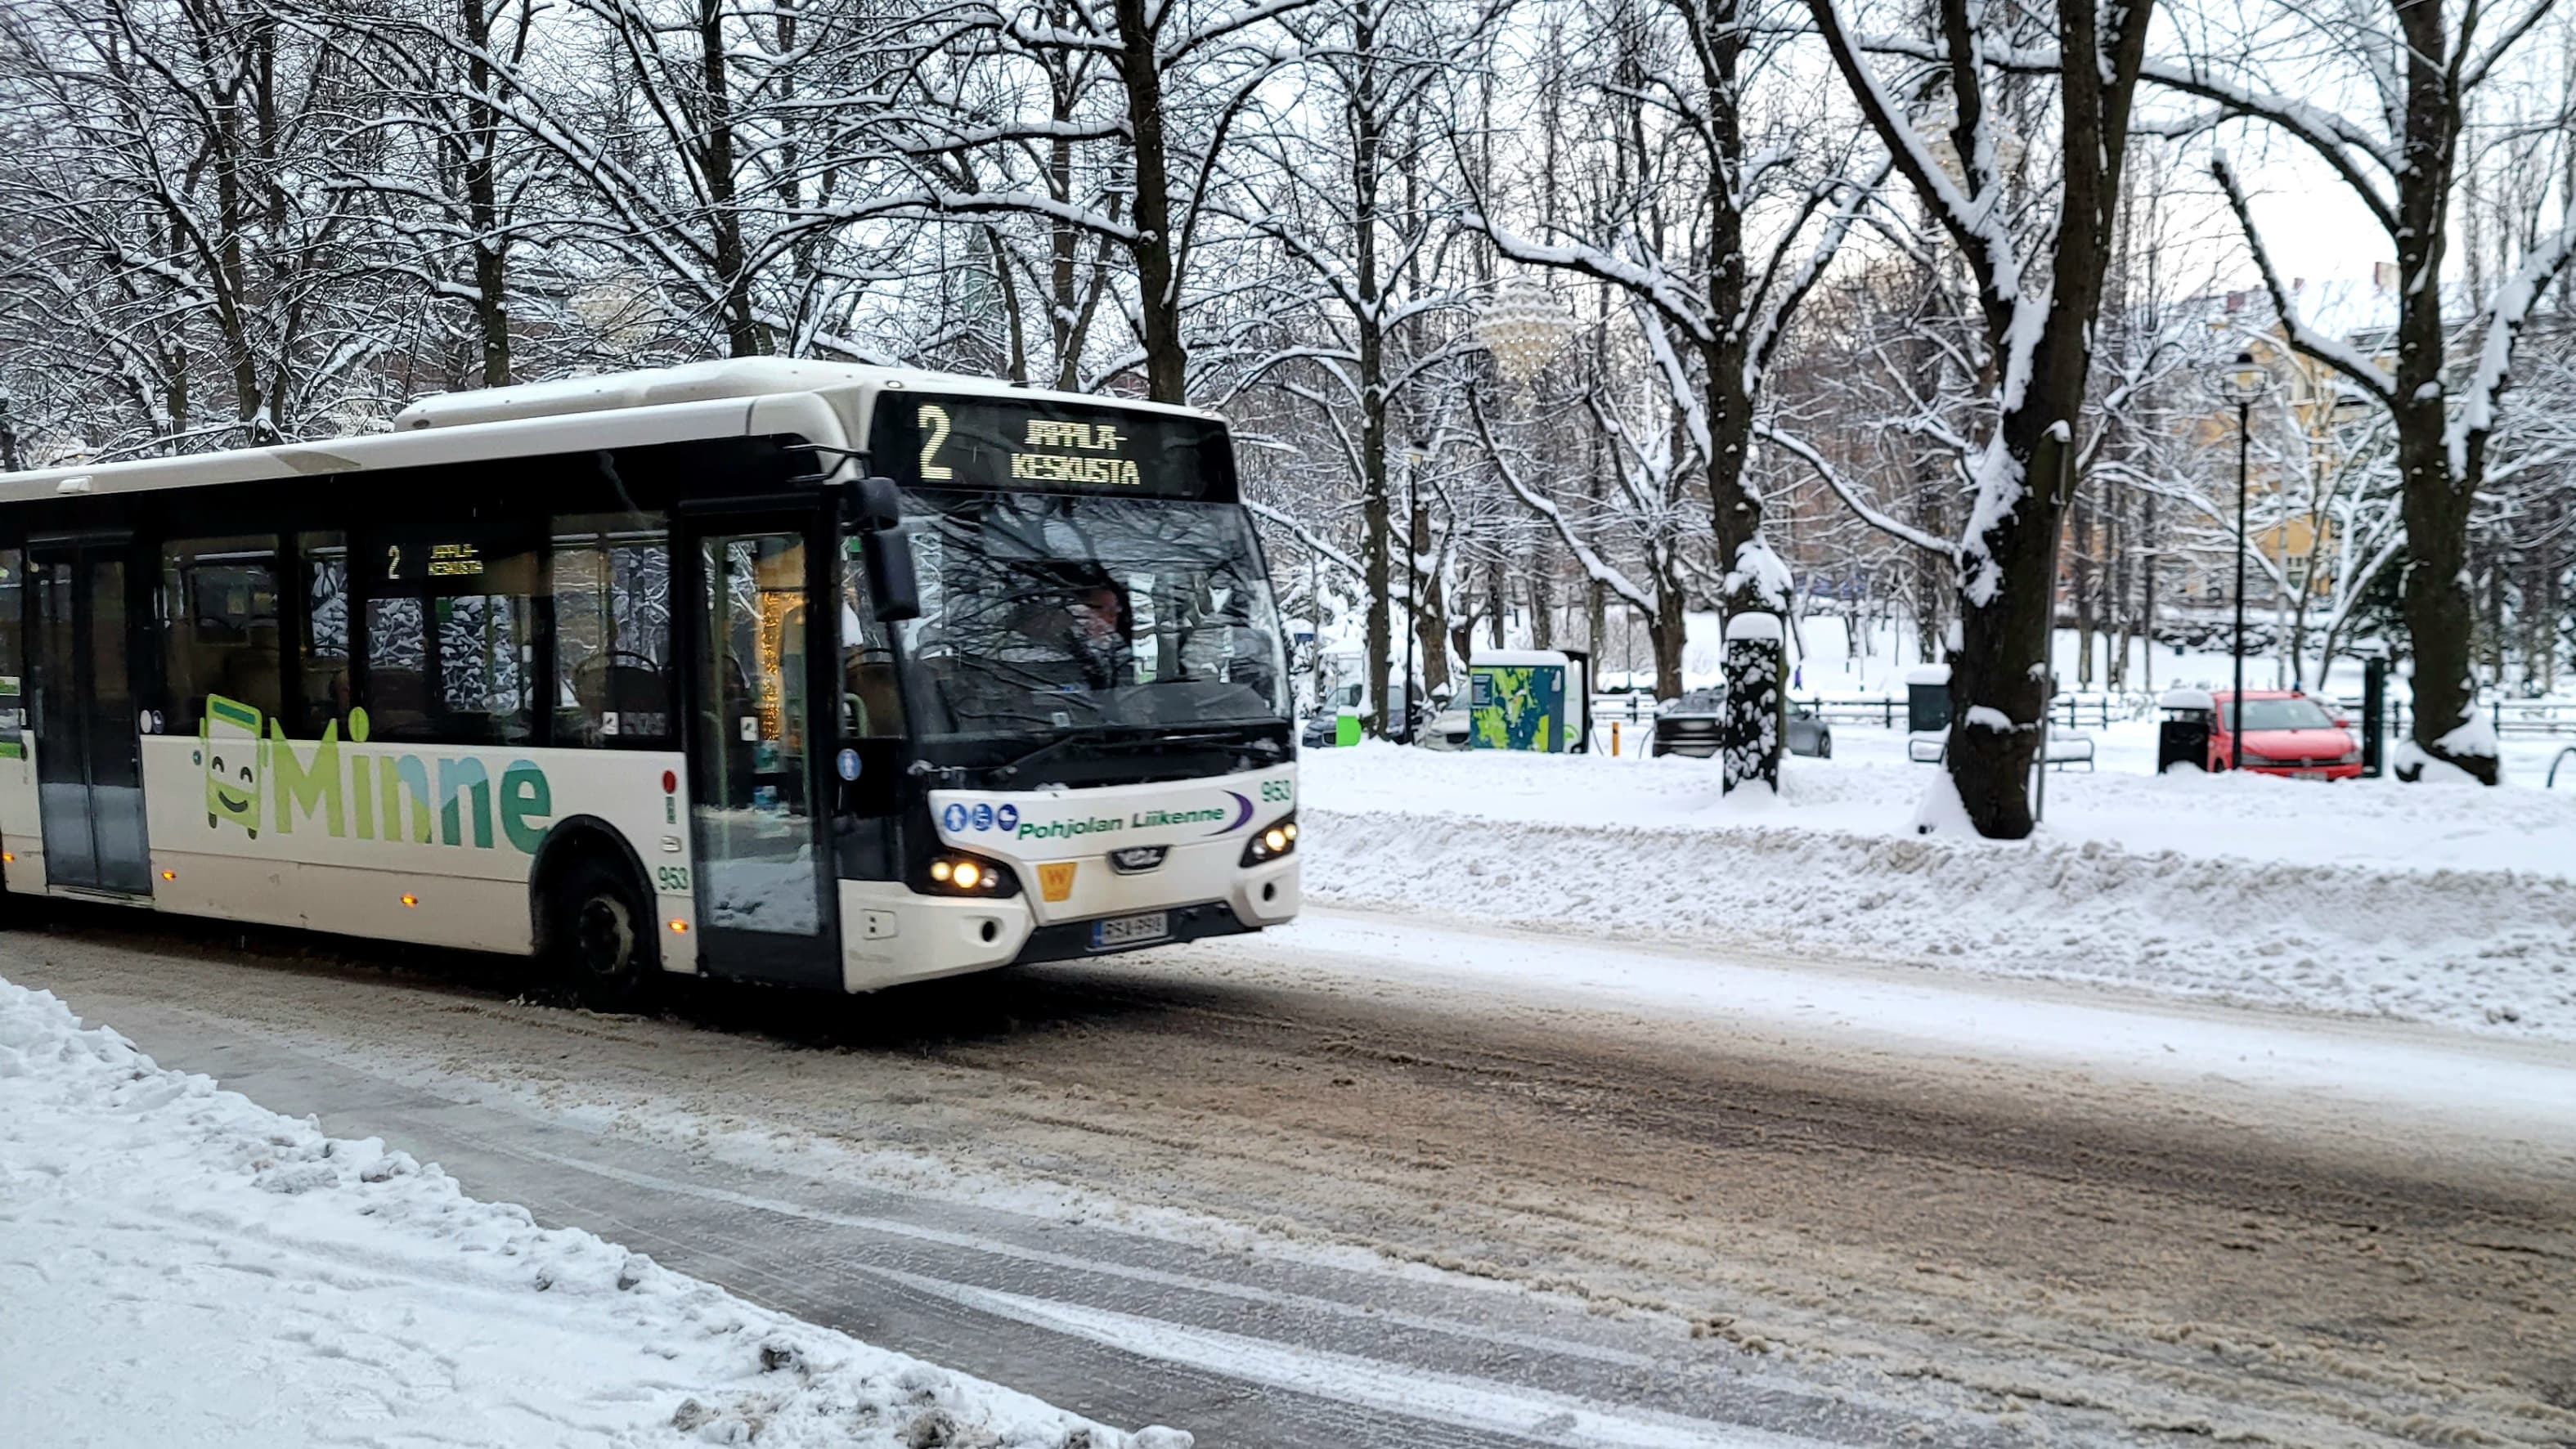 Kotkan seudun busseissa saa pian maksaa matkansa pankkikortilla |  Kymenlaakso | Yle